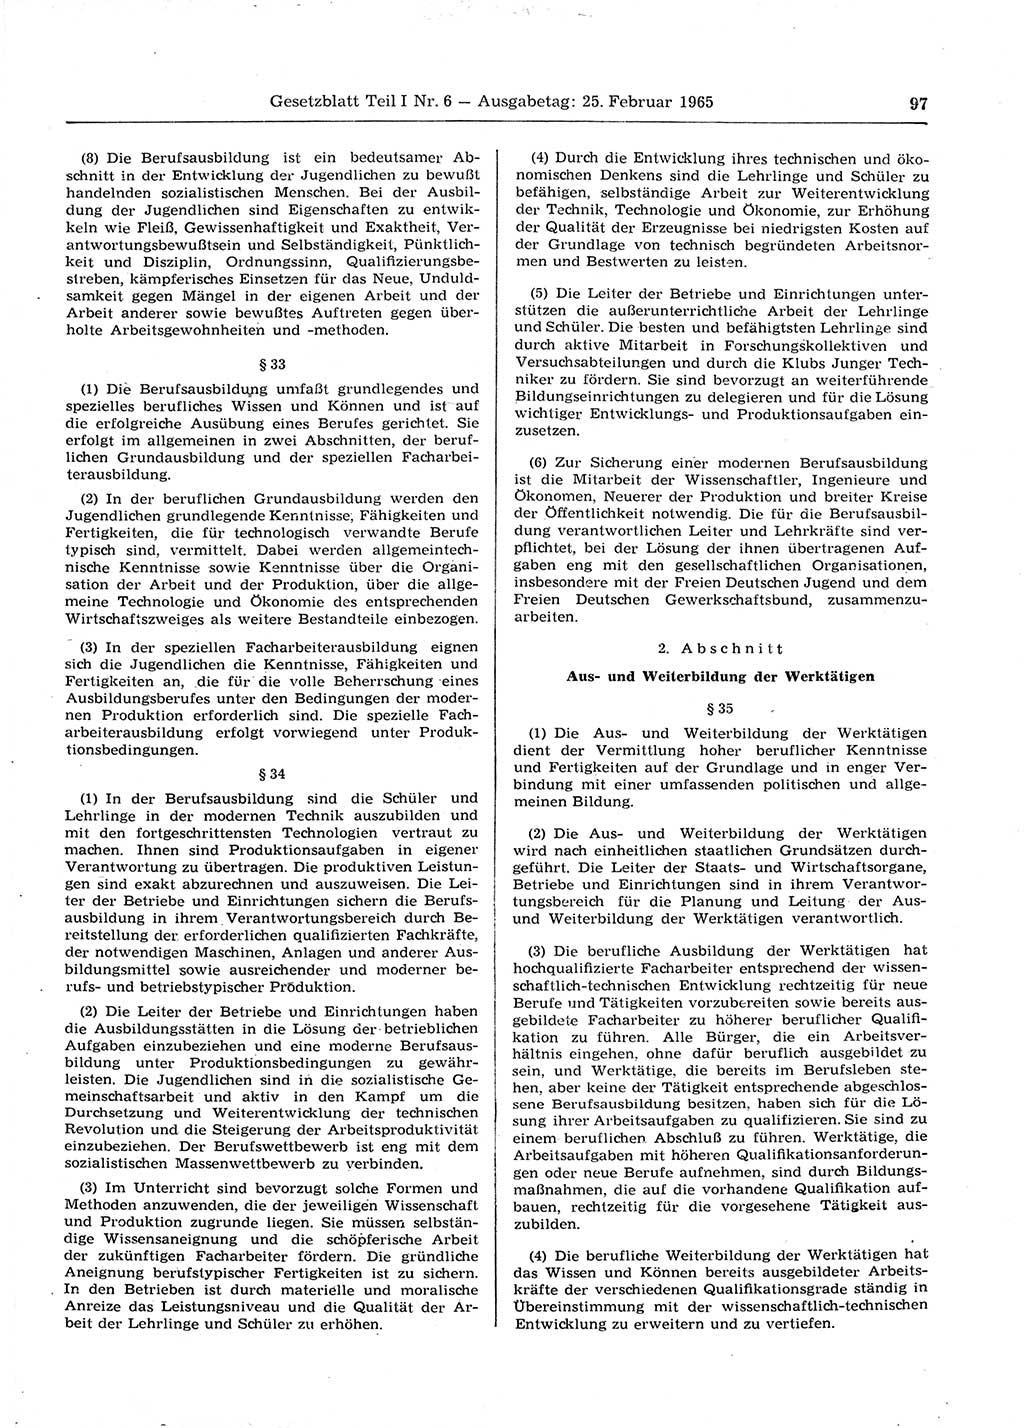 Gesetzblatt (GBl.) der Deutschen Demokratischen Republik (DDR) Teil Ⅰ 1965, Seite 97 (GBl. DDR Ⅰ 1965, S. 97)